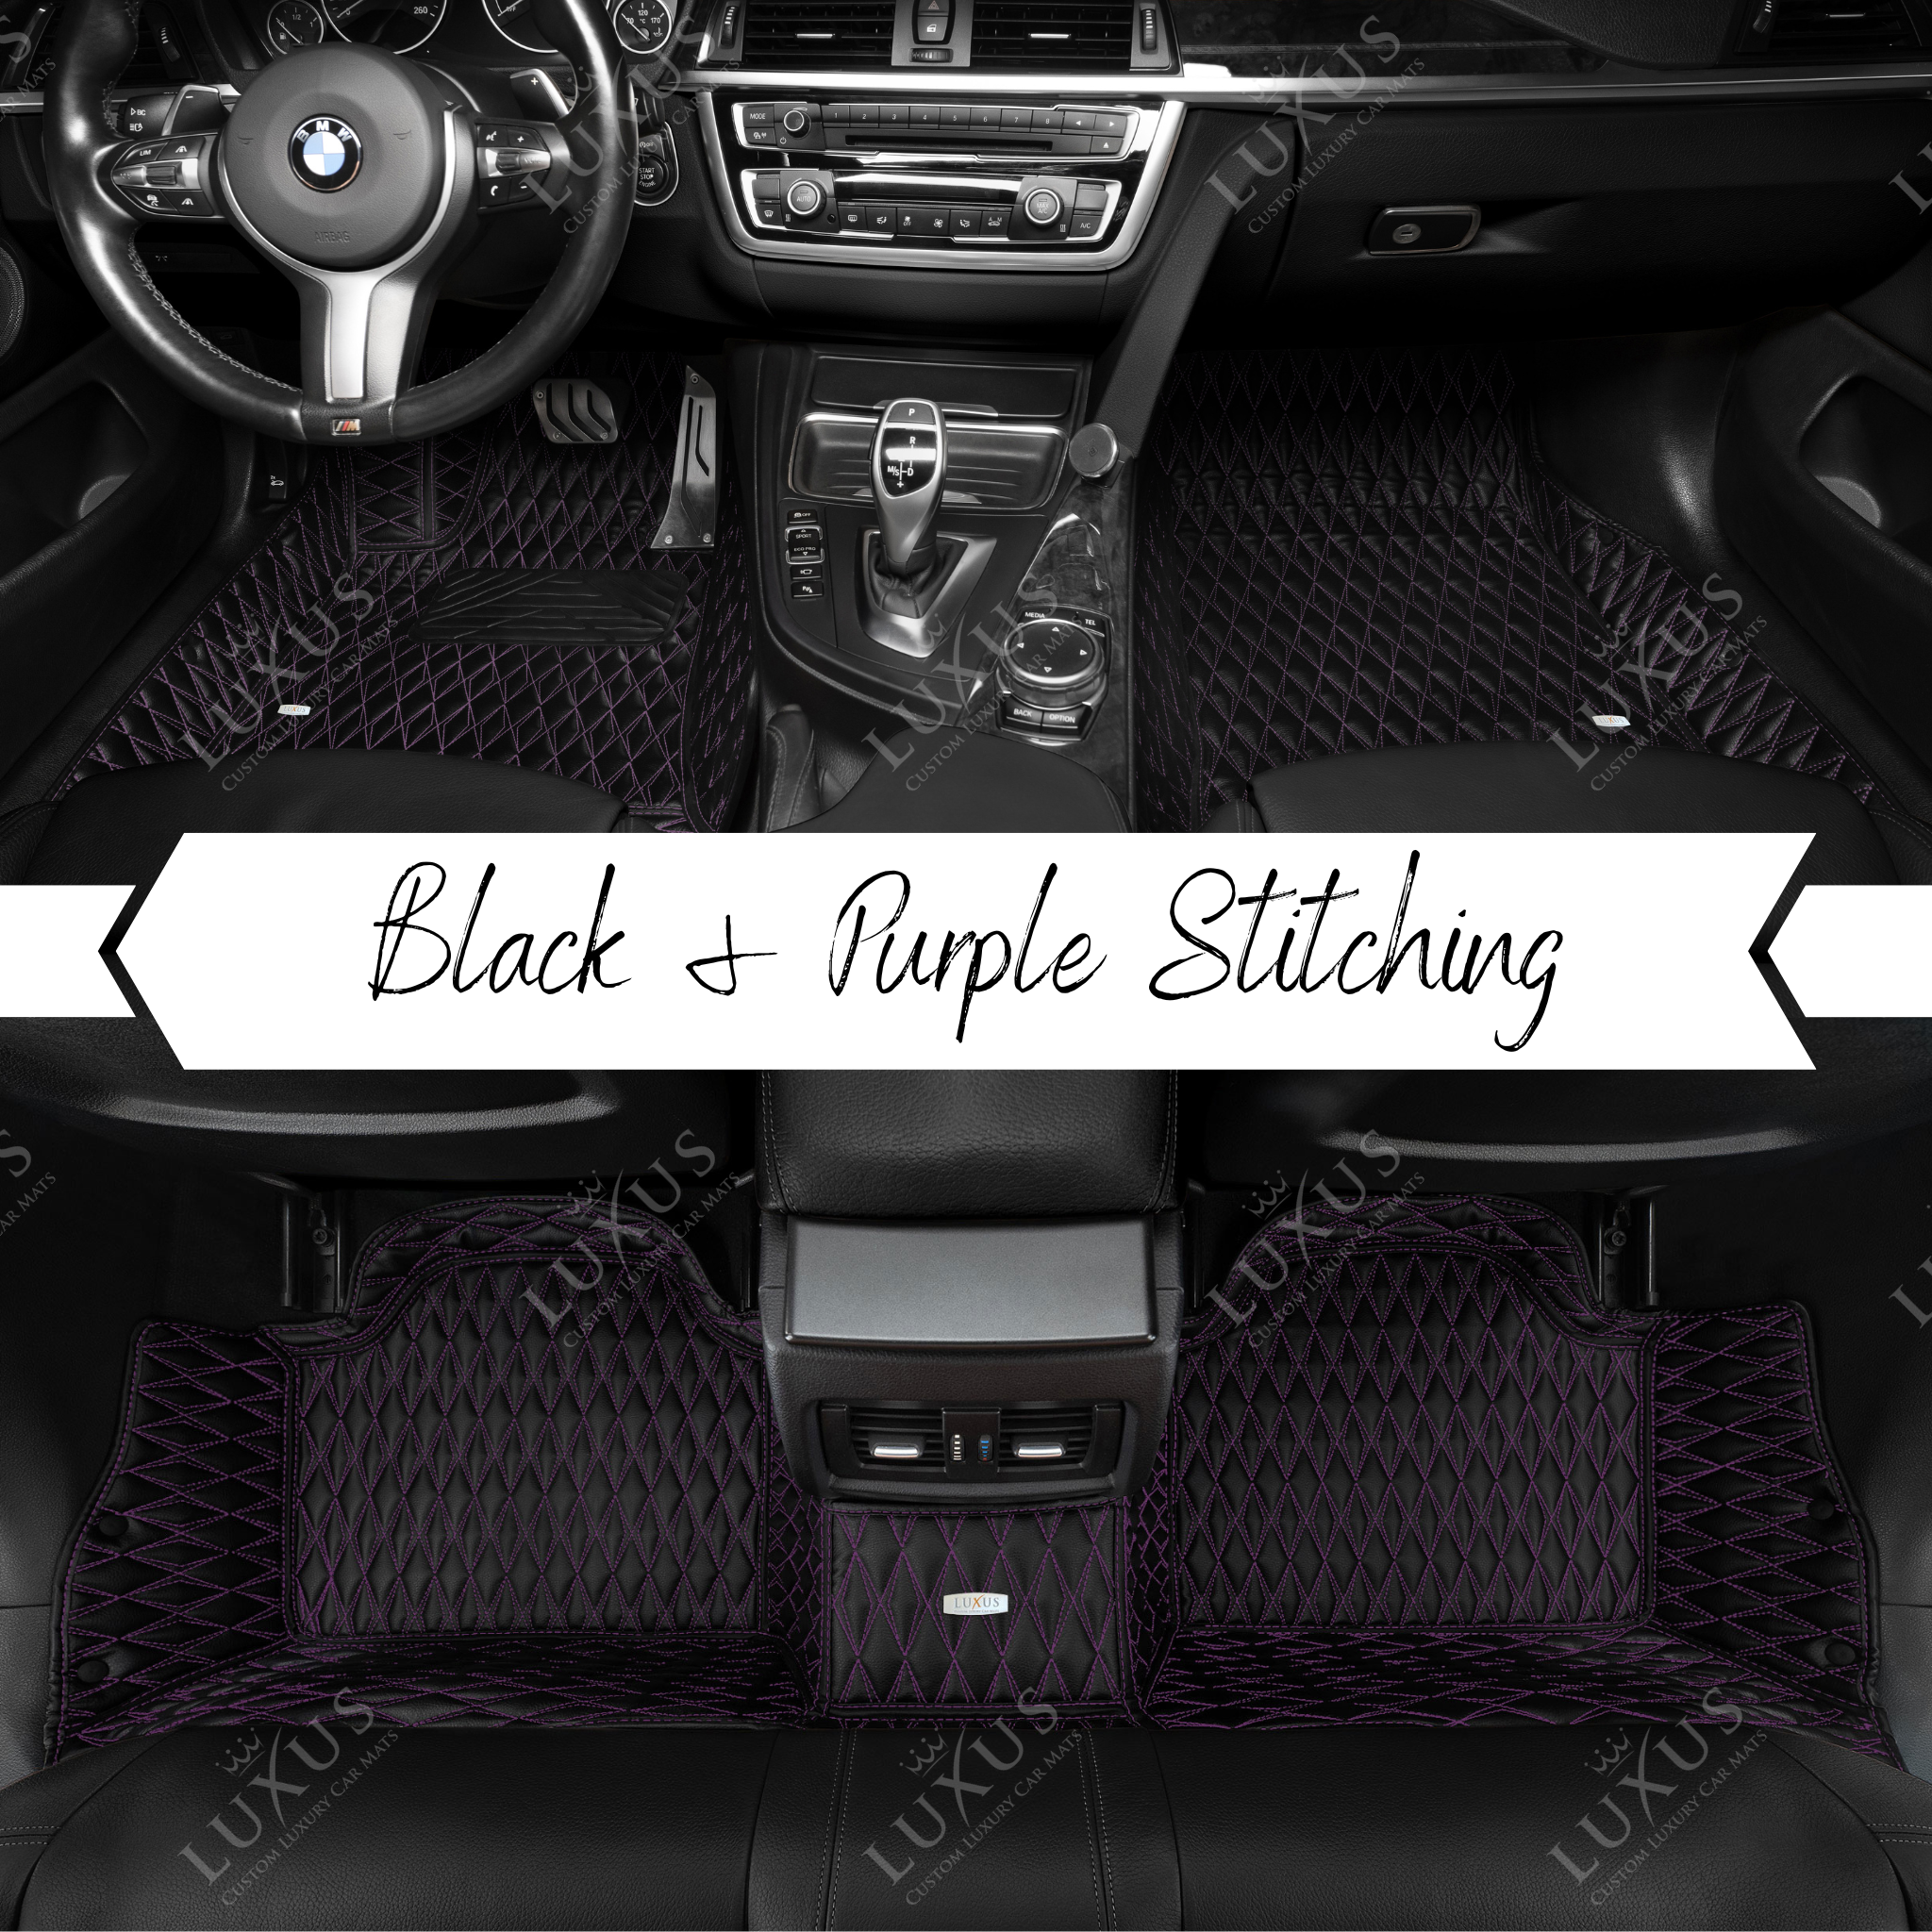 Twin-Diamond Black & Purple Stitching Luxury Car Mats Set